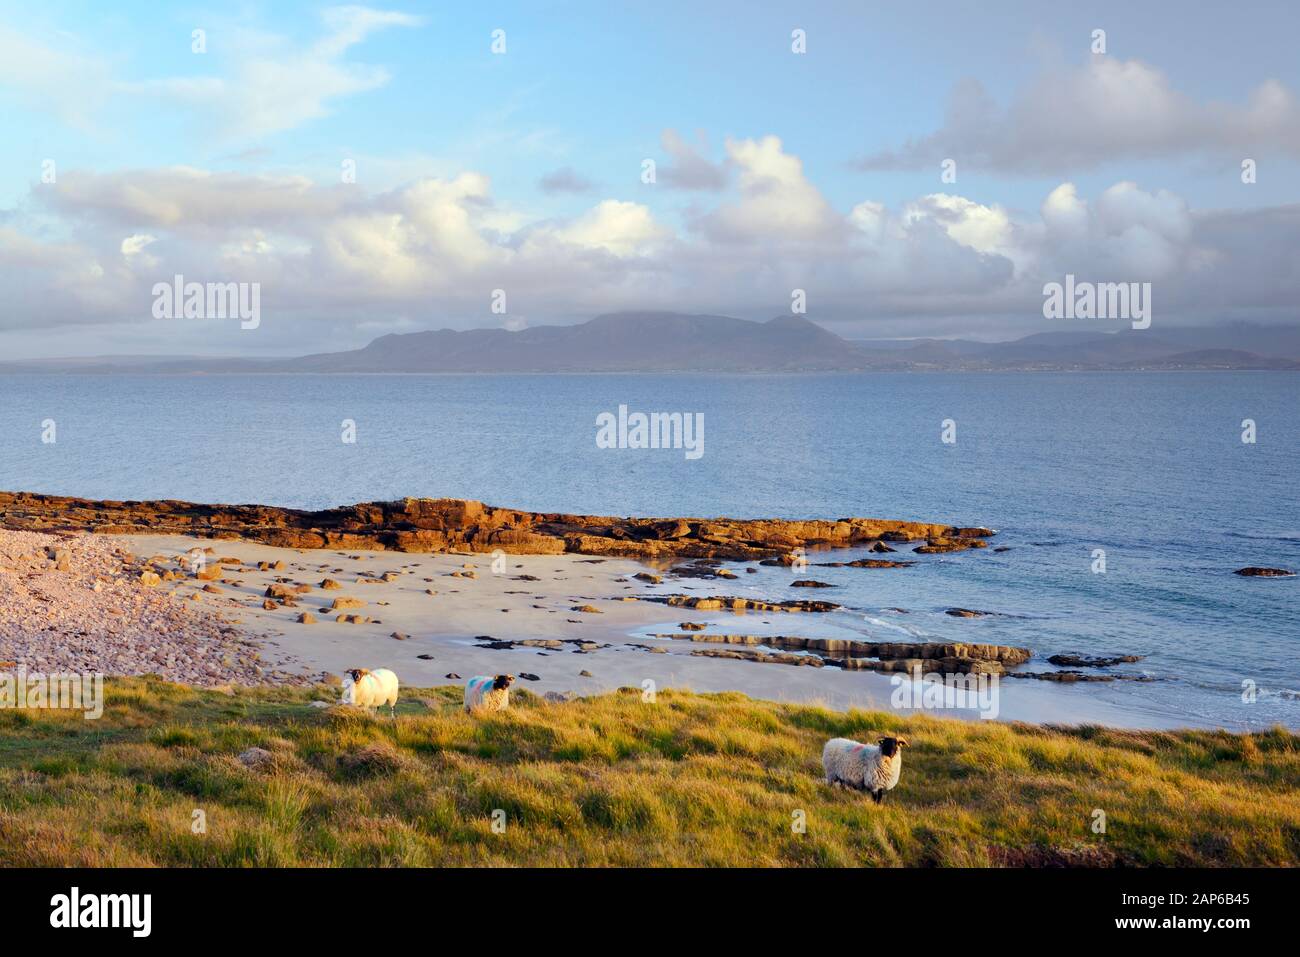 Clew Bay. Al sureste de la costa norte de la Bahía de Clew a Croagh Patrick montaña sagrada en el condado de Mayo, Connacht, Irlanda Foto de stock